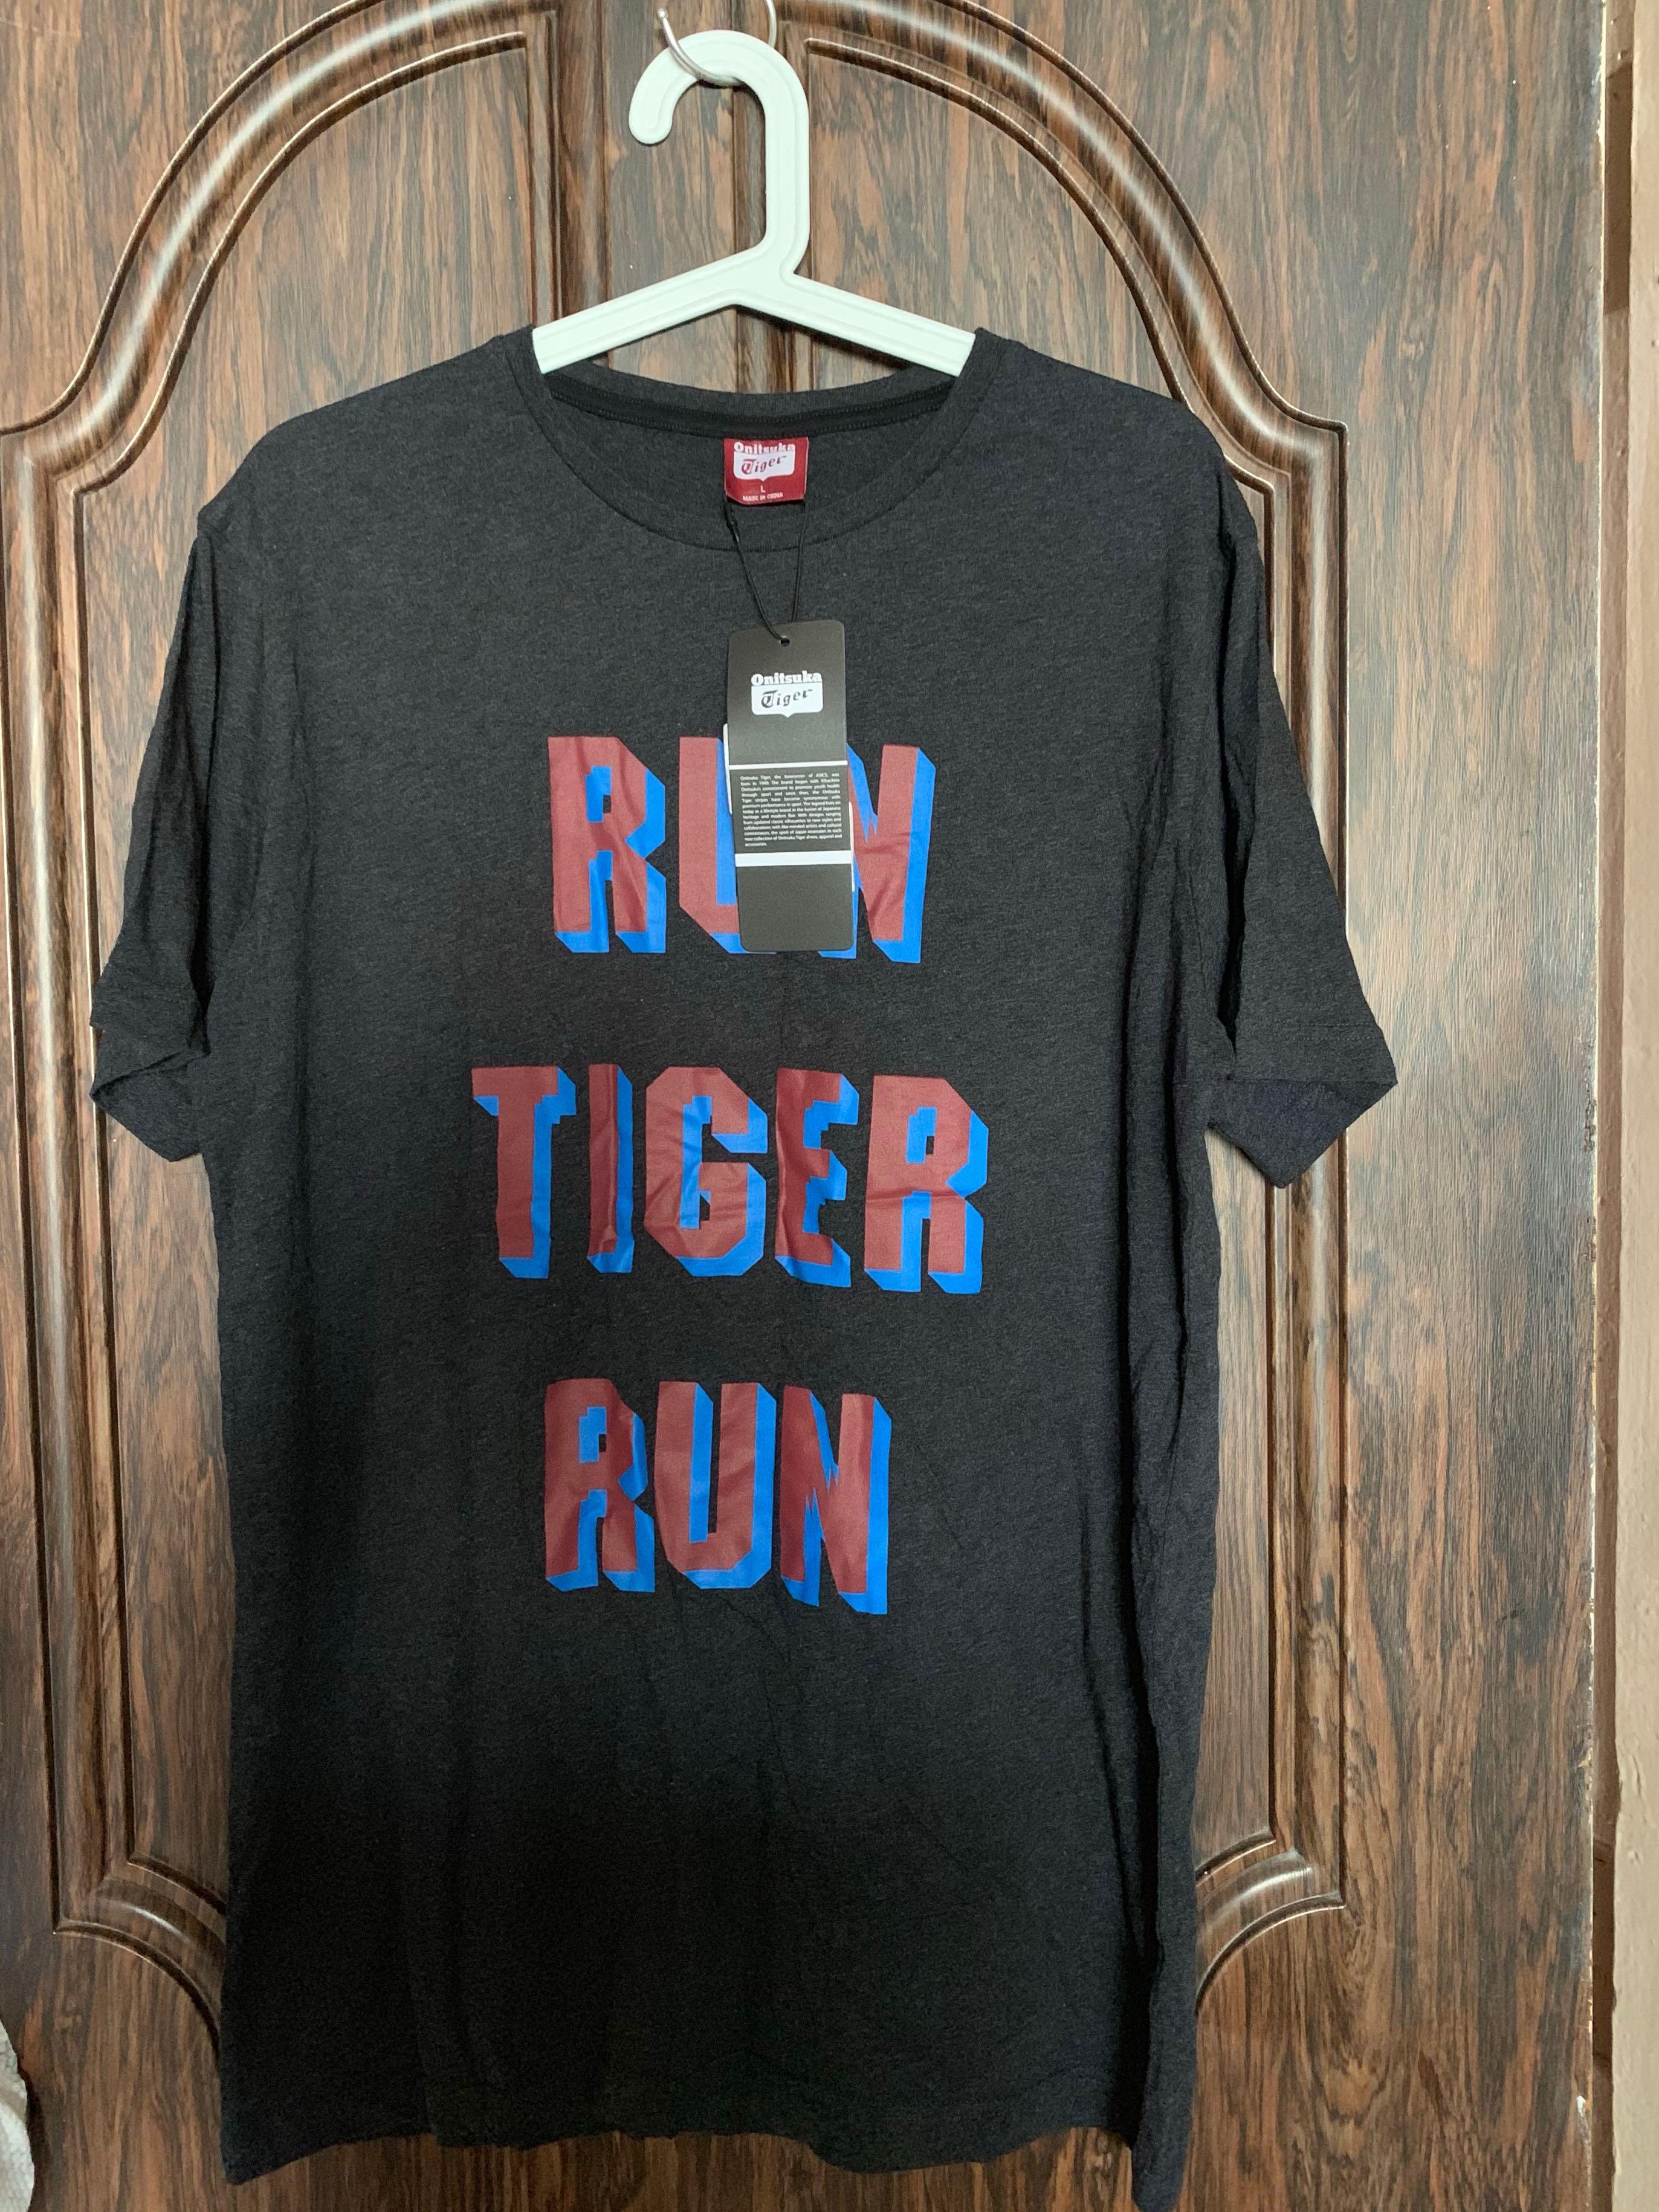 onitsuka tiger t shirt japan